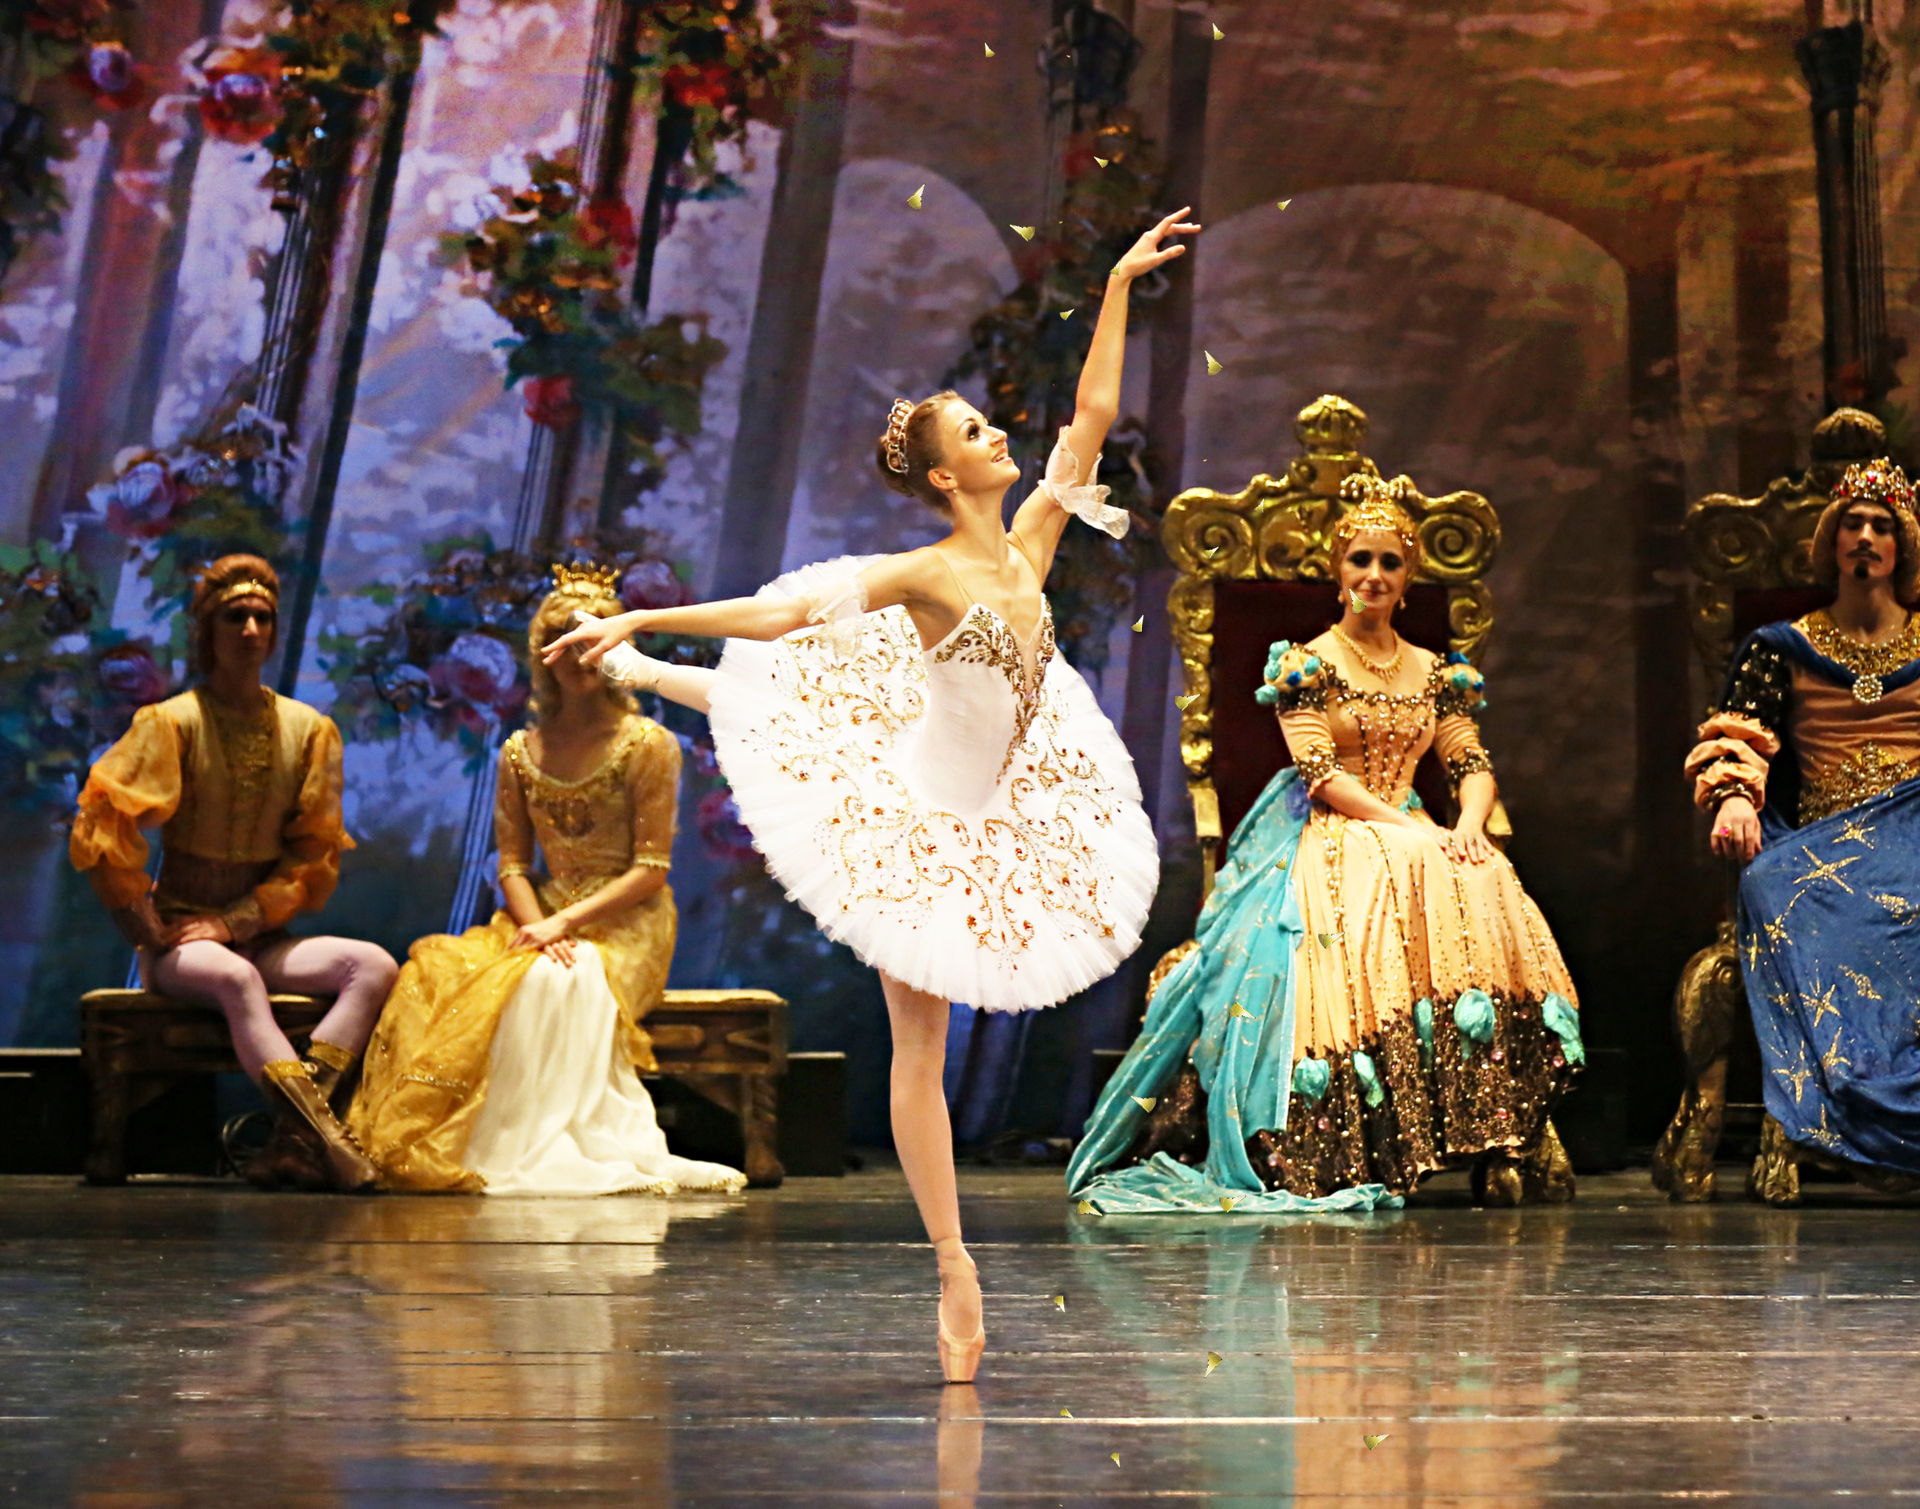 De Staatsopera van Tatarstan betovert jong en oud met het magische sprookjesballet Sleeping Beauty, met muziek van Tsjaikovski en de virtuoze choreografie van Pepita. Een must-see voor balletliefhebbers.